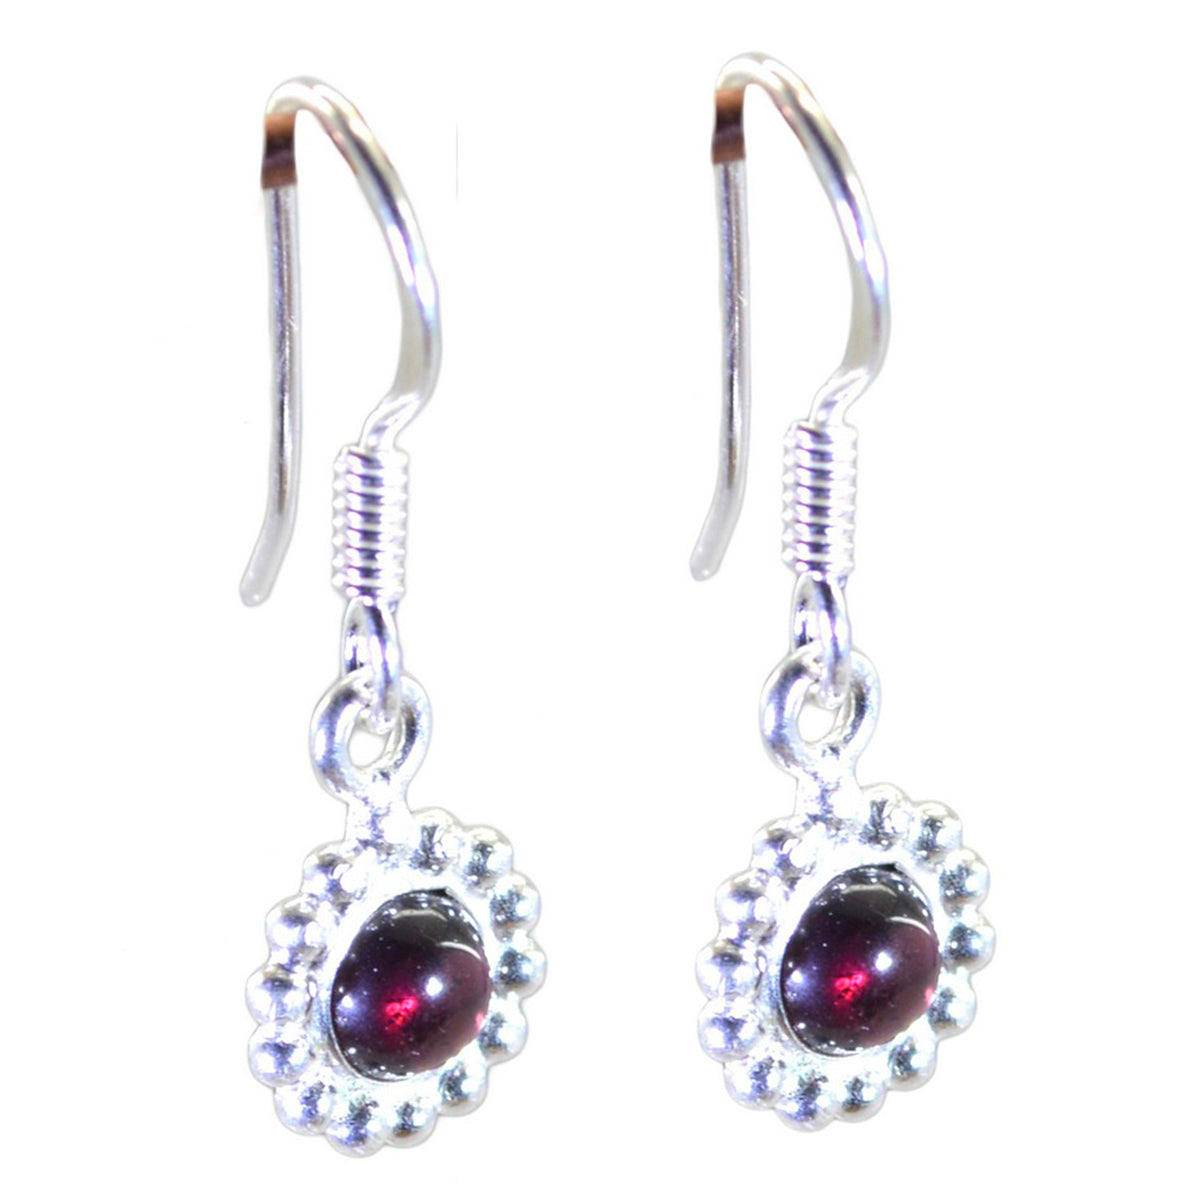 Riyo Genuine Gems round Cabochon Red Garnet Silver Earrings mom gift